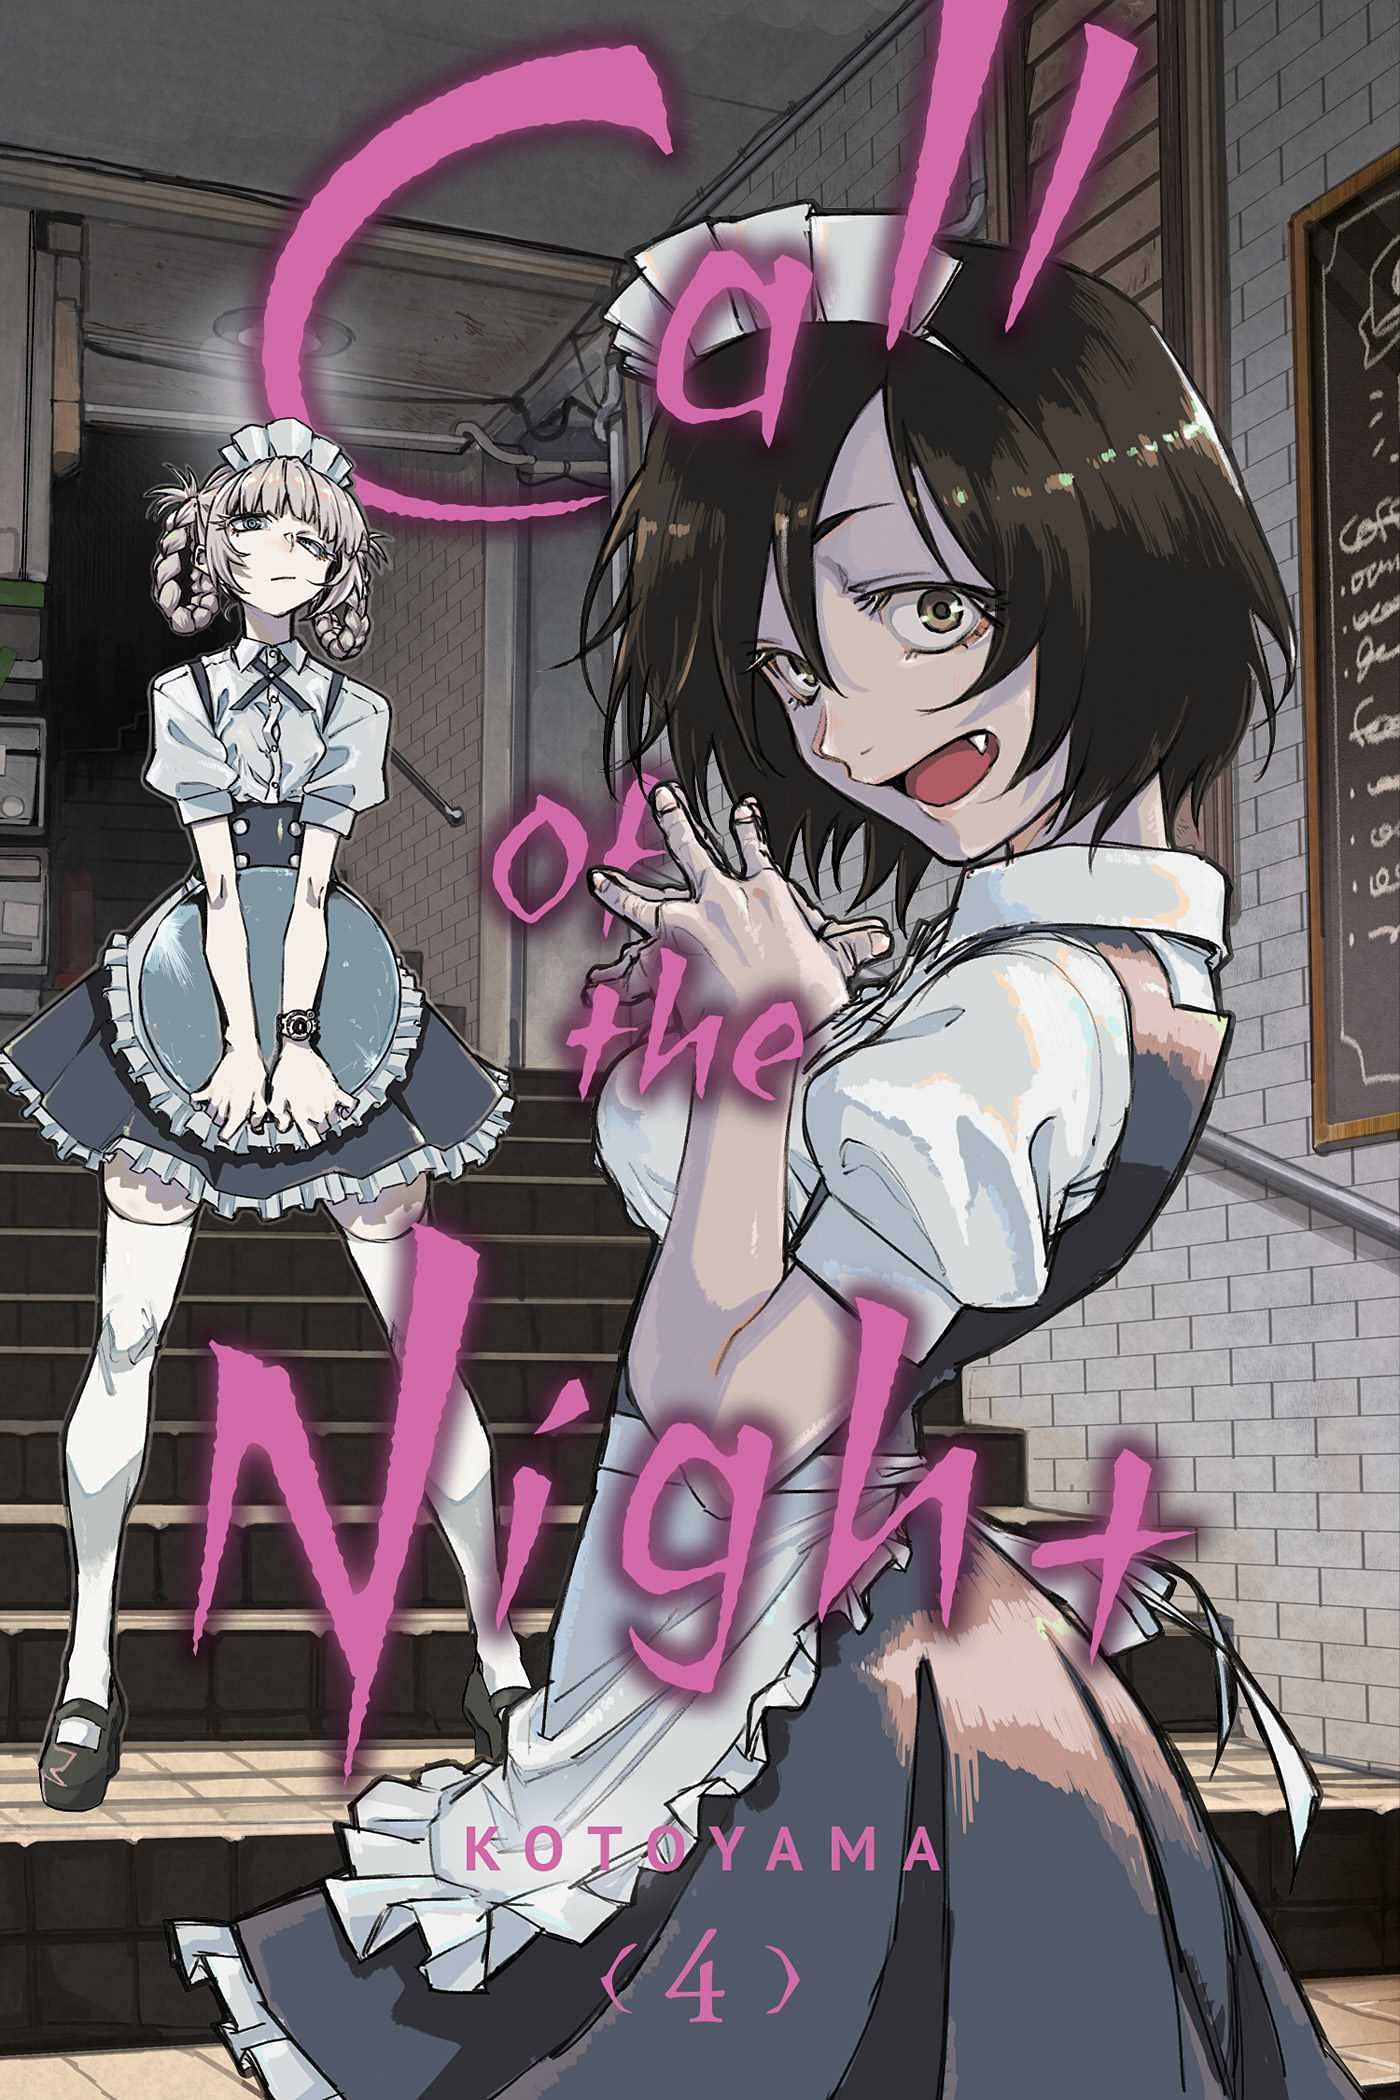 Call of the Night - Volume 4 | Kotoyama